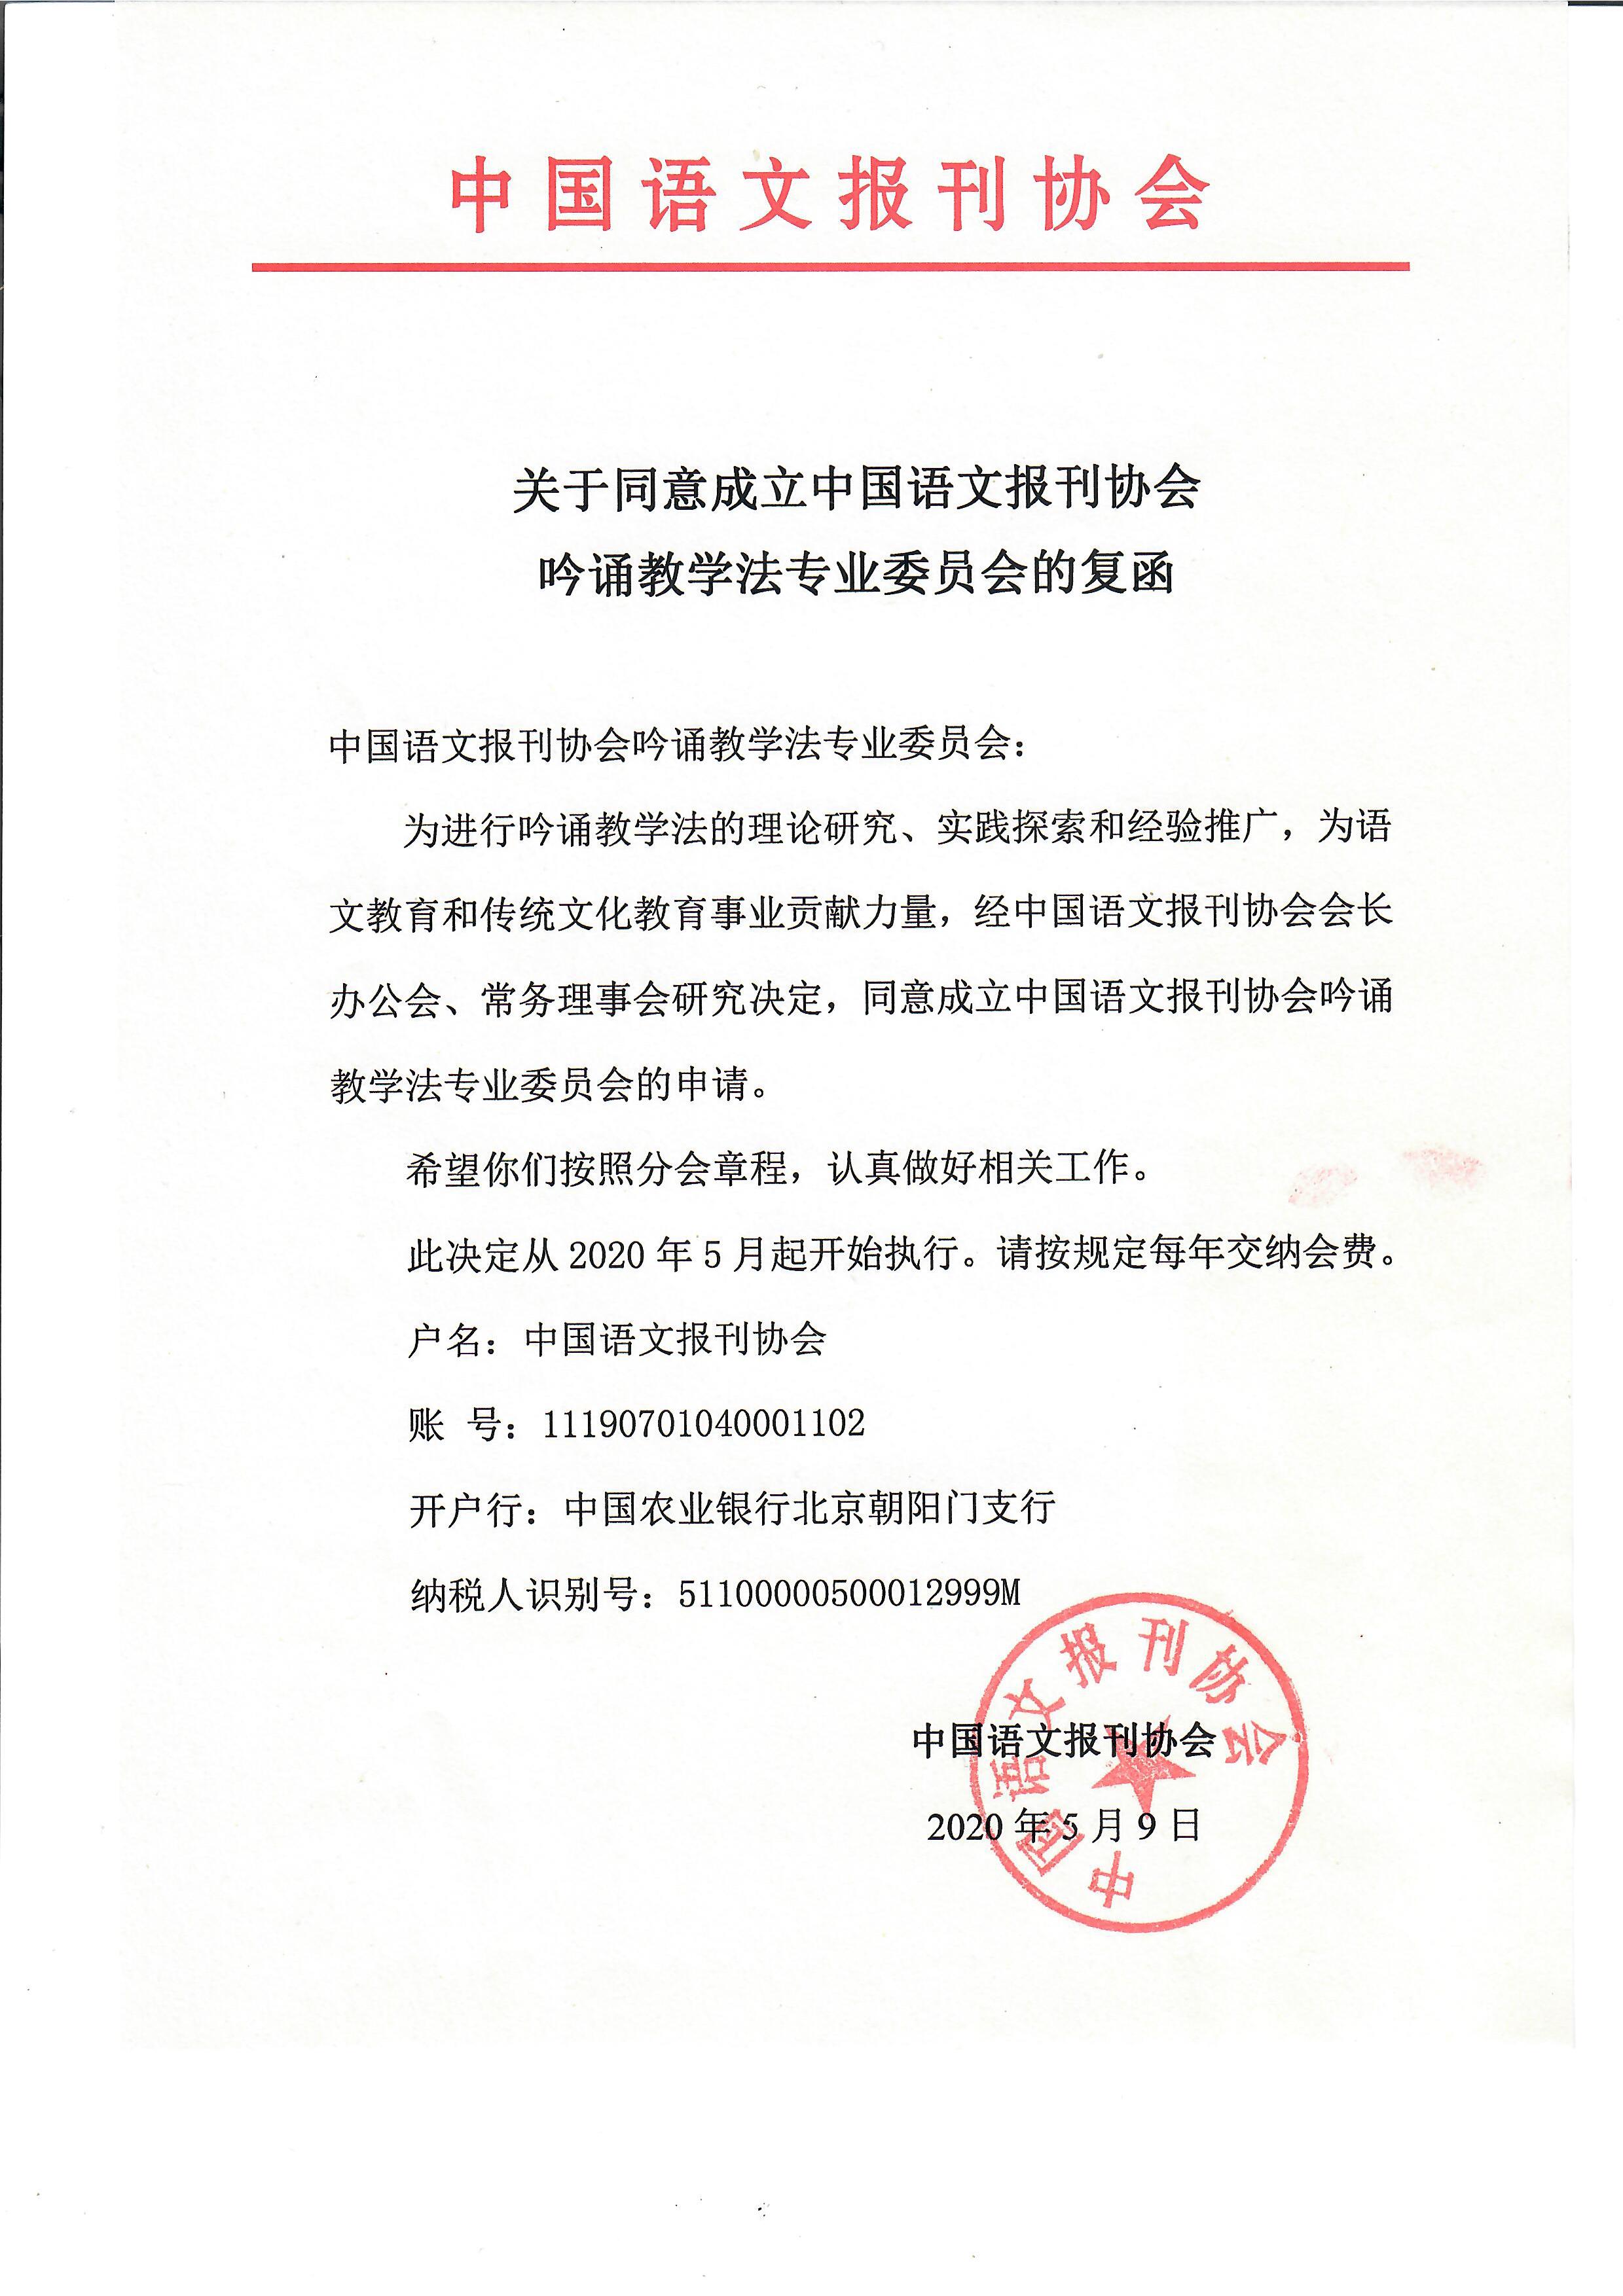 中国语文报刊协会吟诵教学法专业委员会成立！会员招募中！